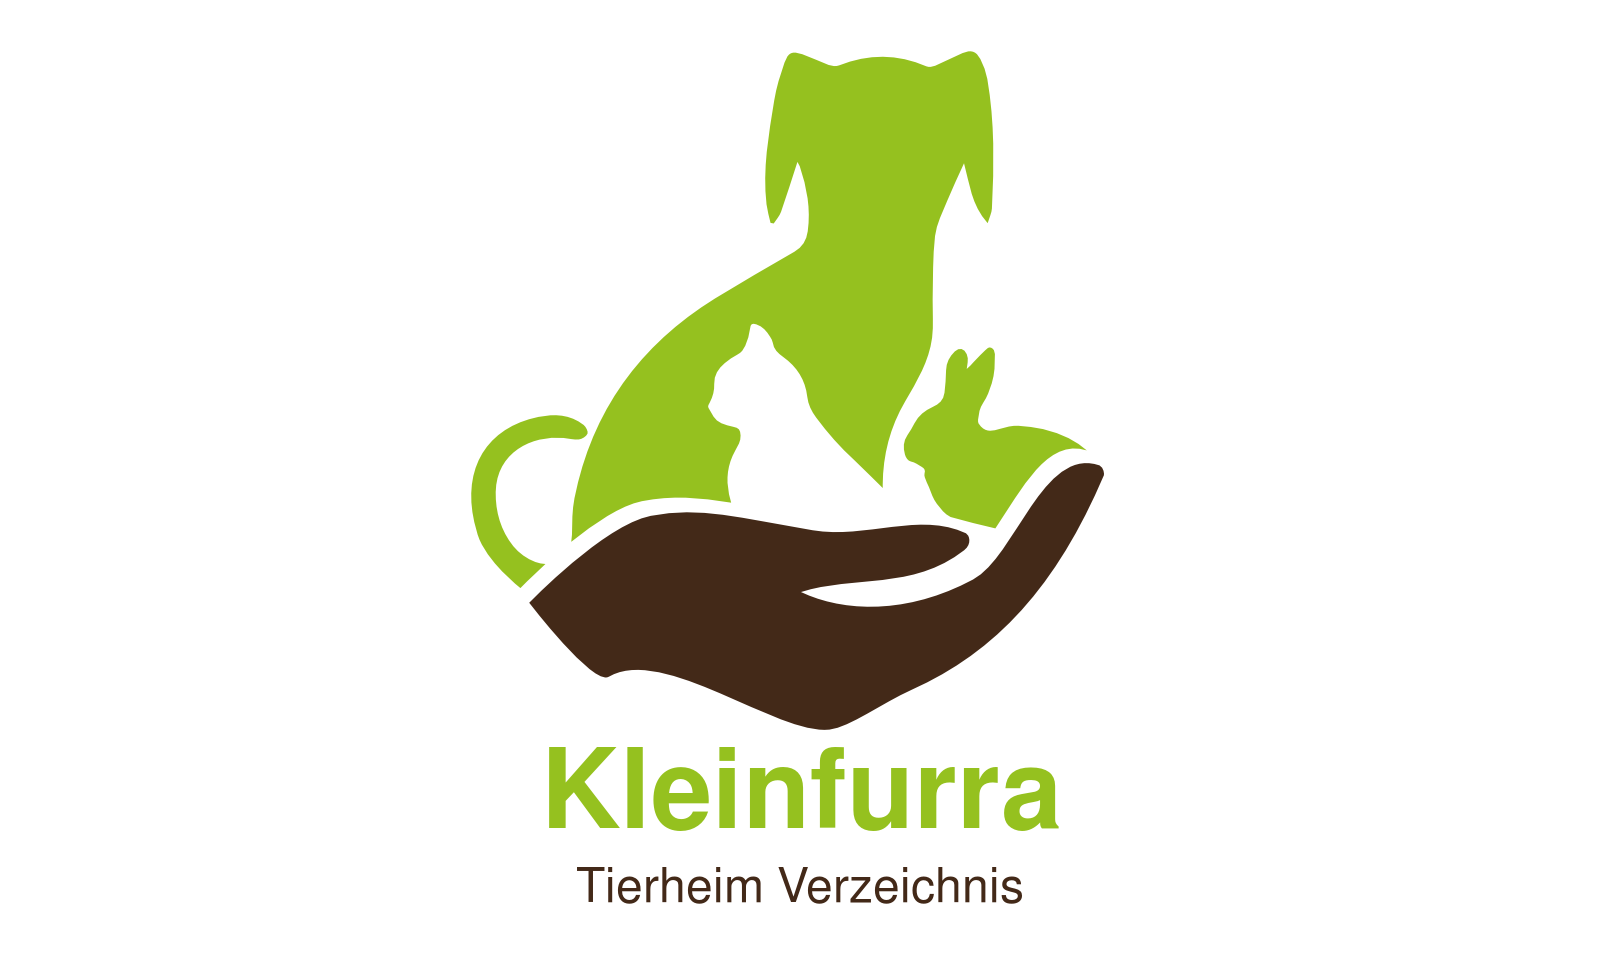 Tierheim Kleinfurra